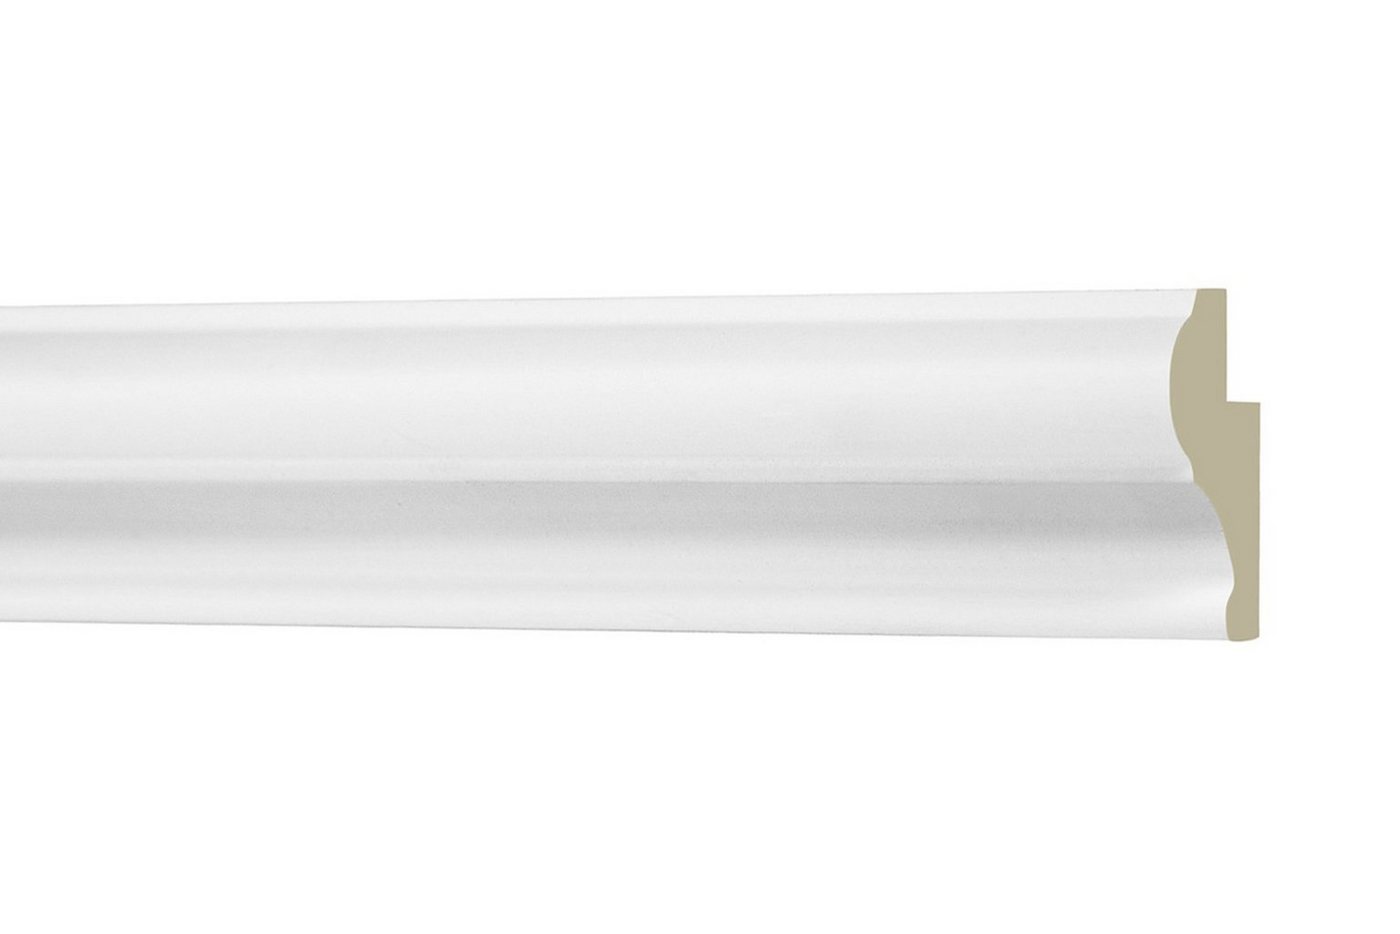 Hexim Perfect Stuckleiste AD 405, Flachleiste aus PU Serie 1 - Stuckleiste glatt, weißes Zierprofil, hart & stoßfest - Wandleiste vorgrundiert von Hexim Perfect